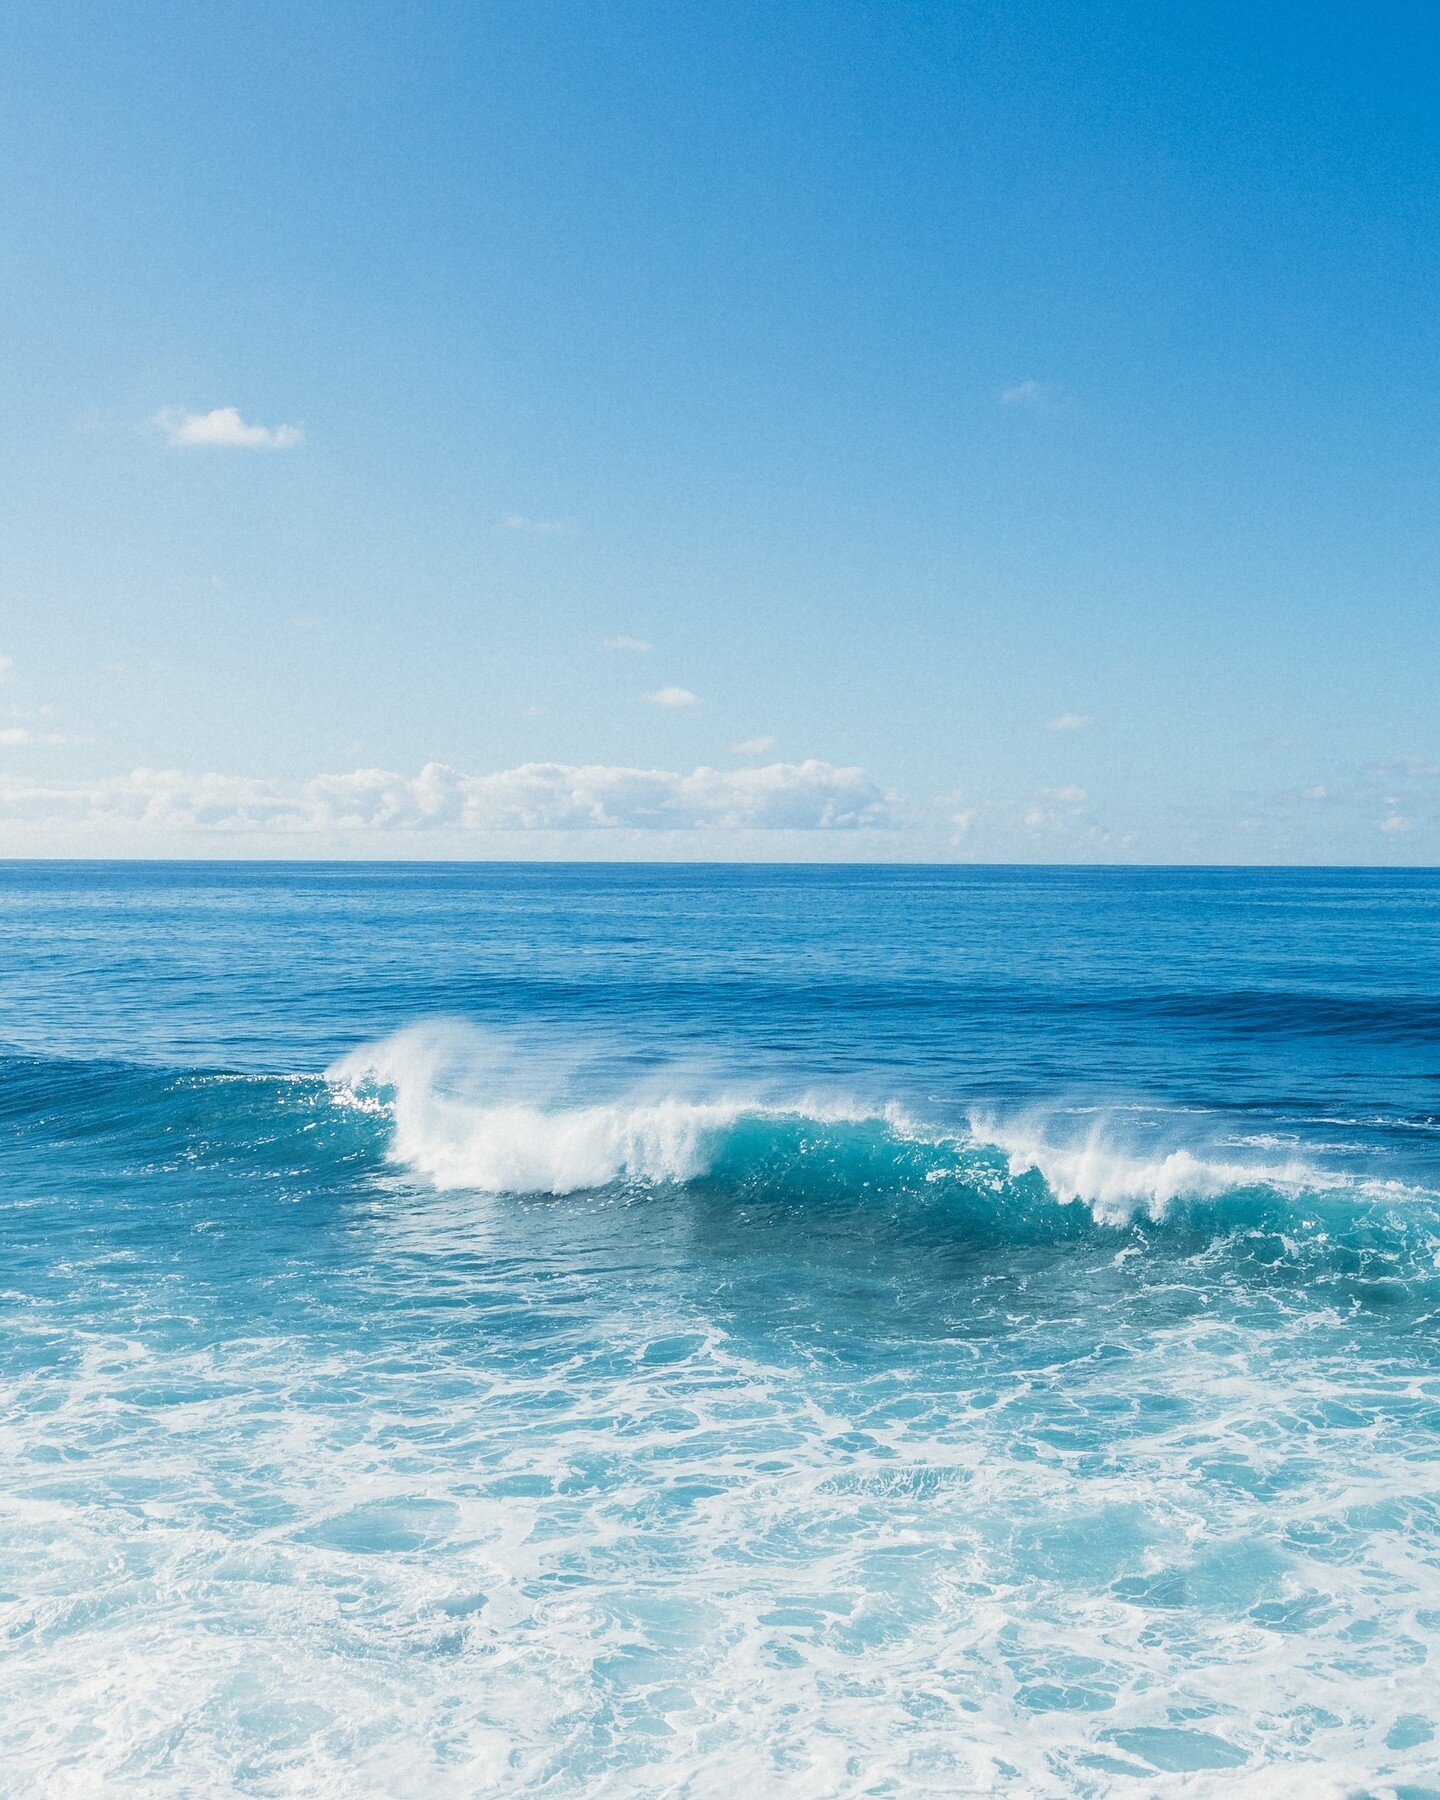 Missing these blue skies 💙

#waves #surfshots #surfingportugal #seascape #oceanlover #ocean #jardimdomar #portugal #surf #surfing #madeira #madeiraisland #portugal_lovers #ocean
______________
@visitmadeira @super_portugal @ig_europe @sonyalphasclub